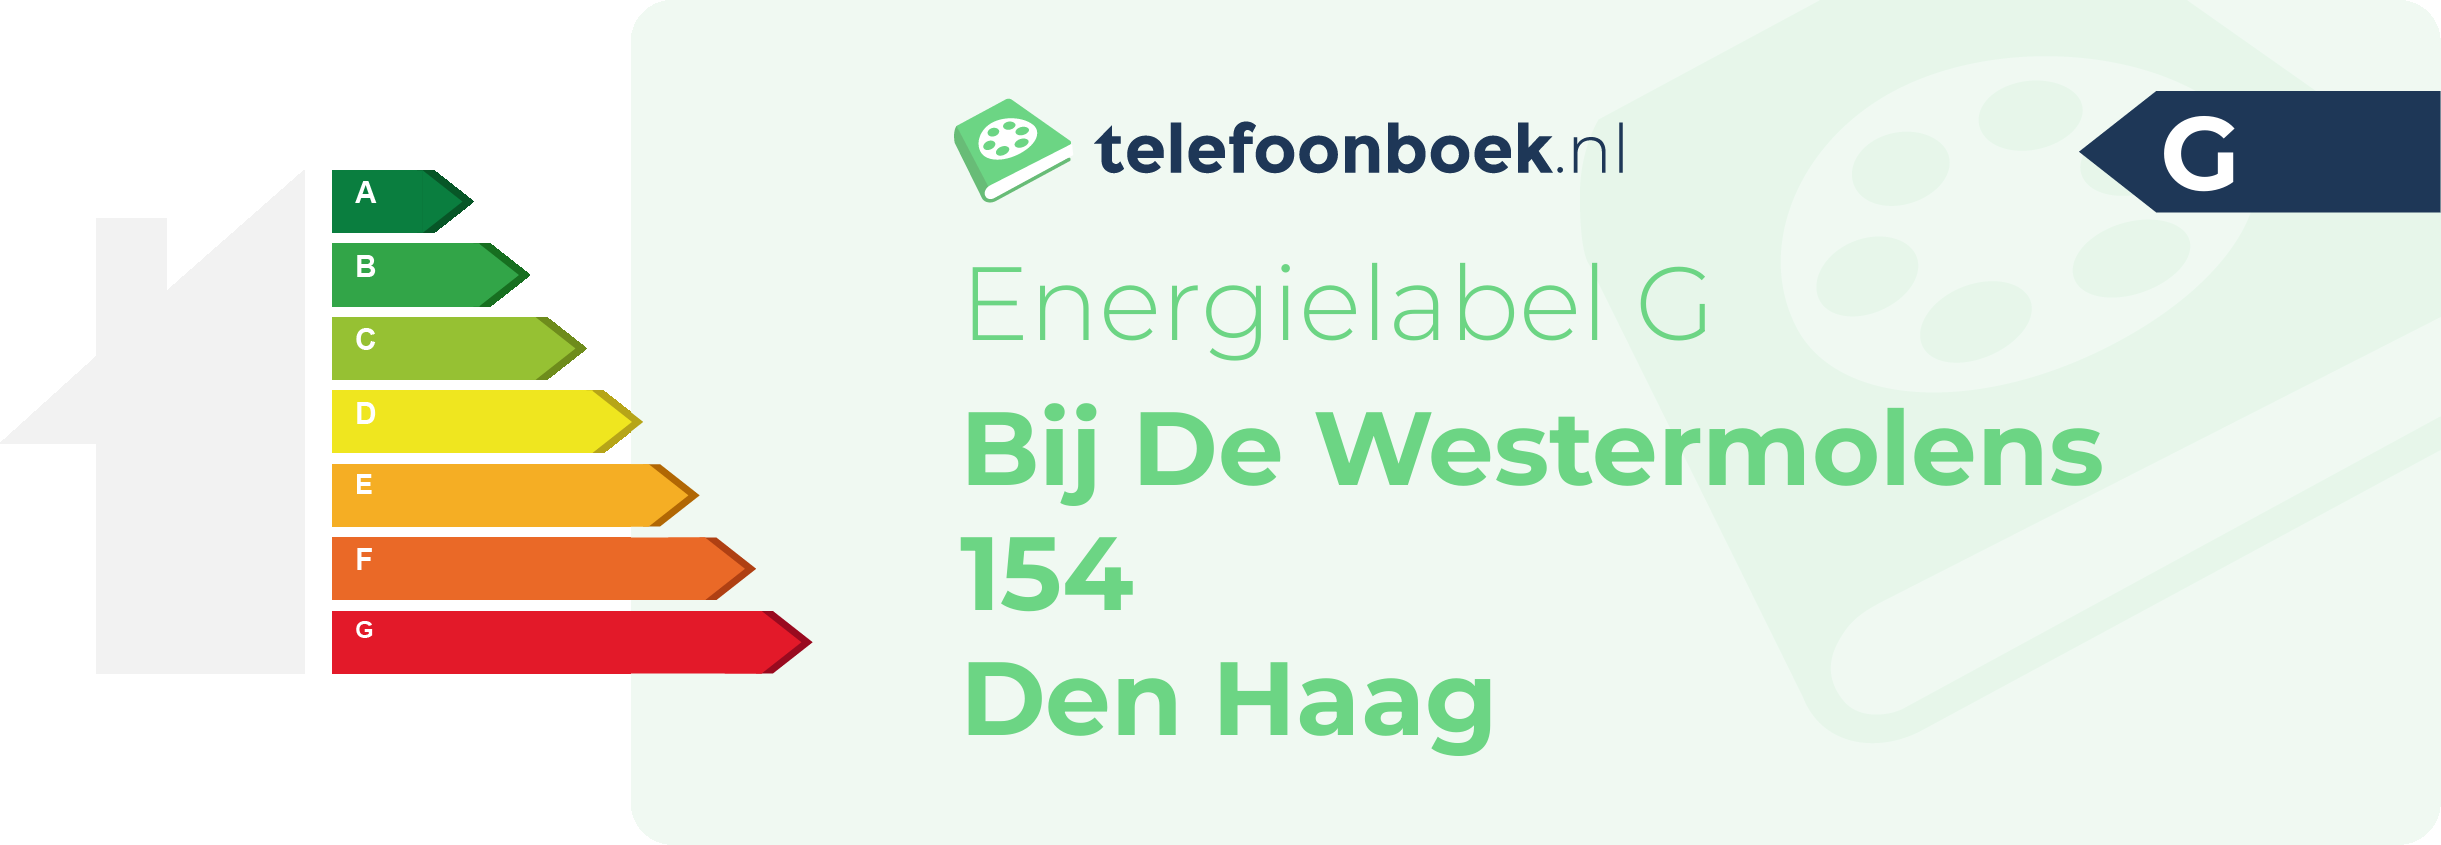 Energielabel Bij De Westermolens 154 Den Haag